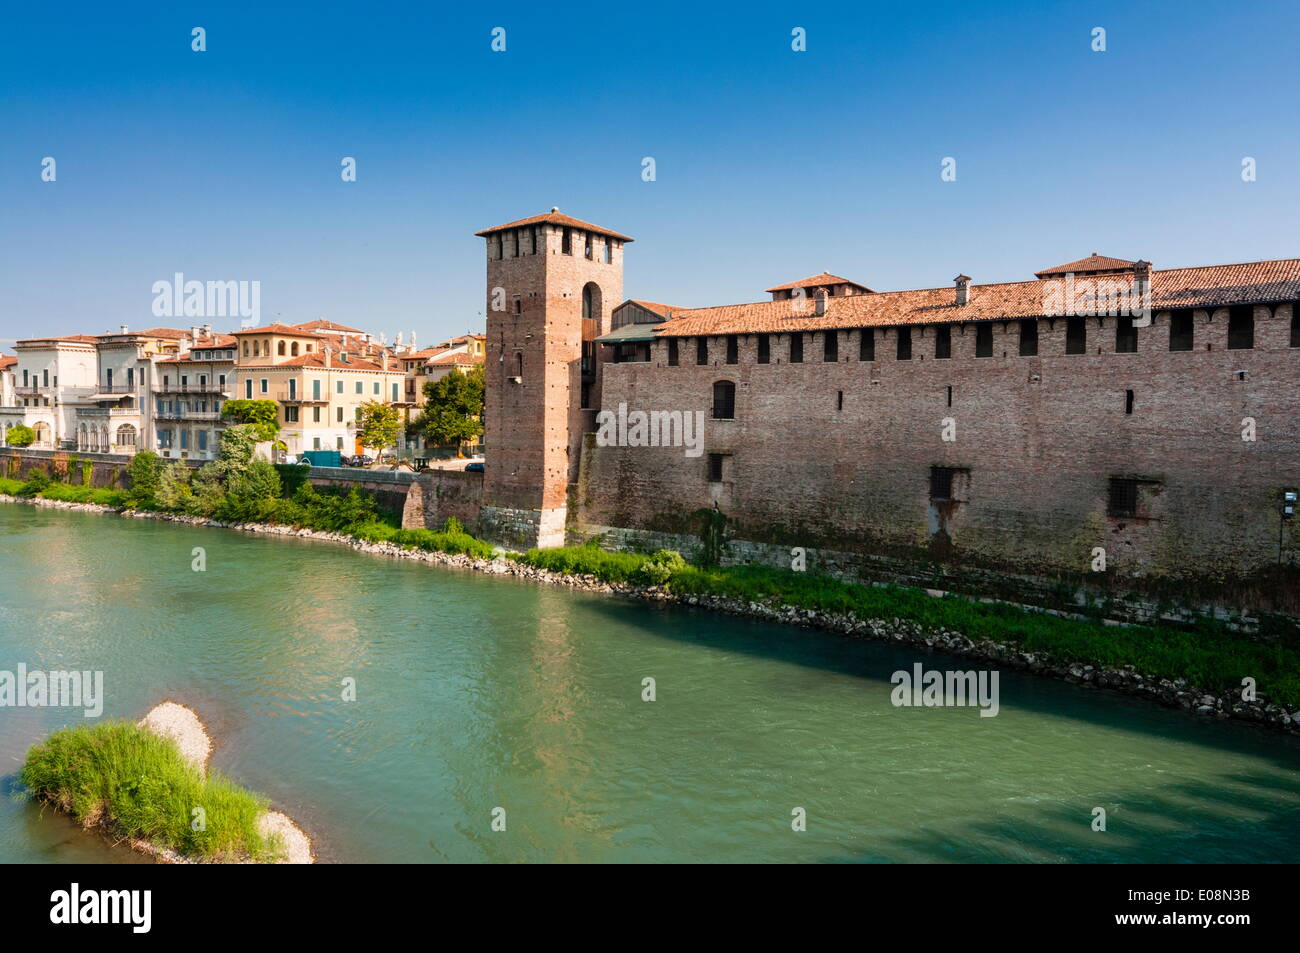 Forteresse de Castelvecchio datant de 1355, l'Adige, Vérone, UNESCO World Heritage Site, Vénétie, Italie, Europe Banque D'Images